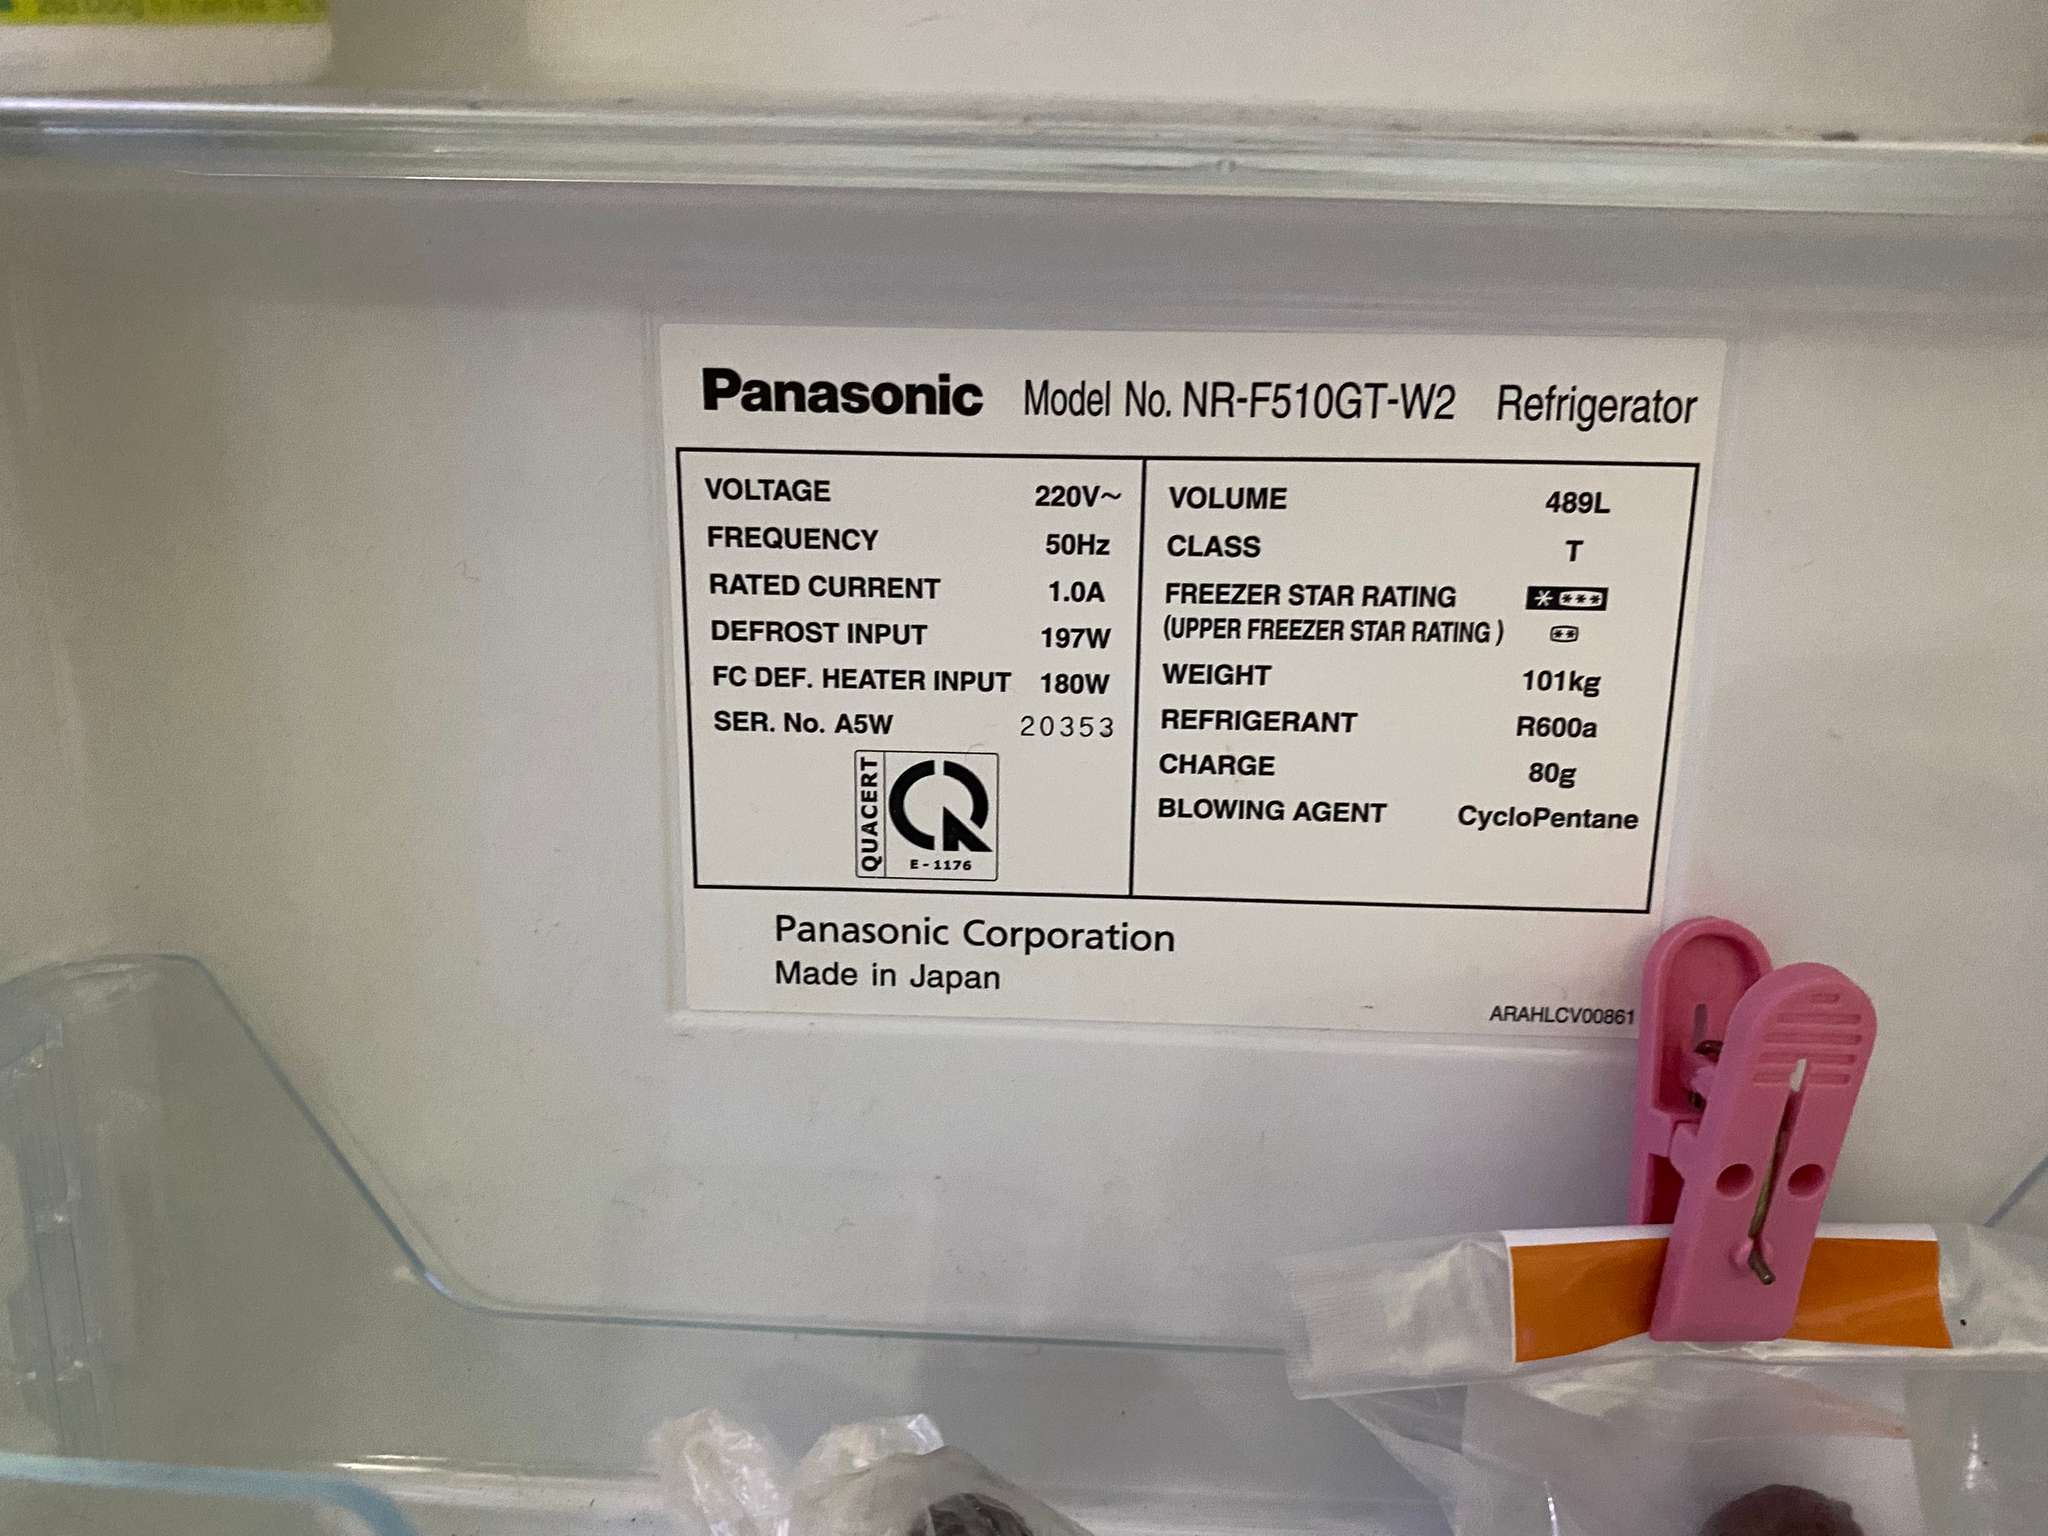 Review Tủ lạnh Panasonic NR-F510GT-W2 sau 5 năm sử dụng (2016-2021)